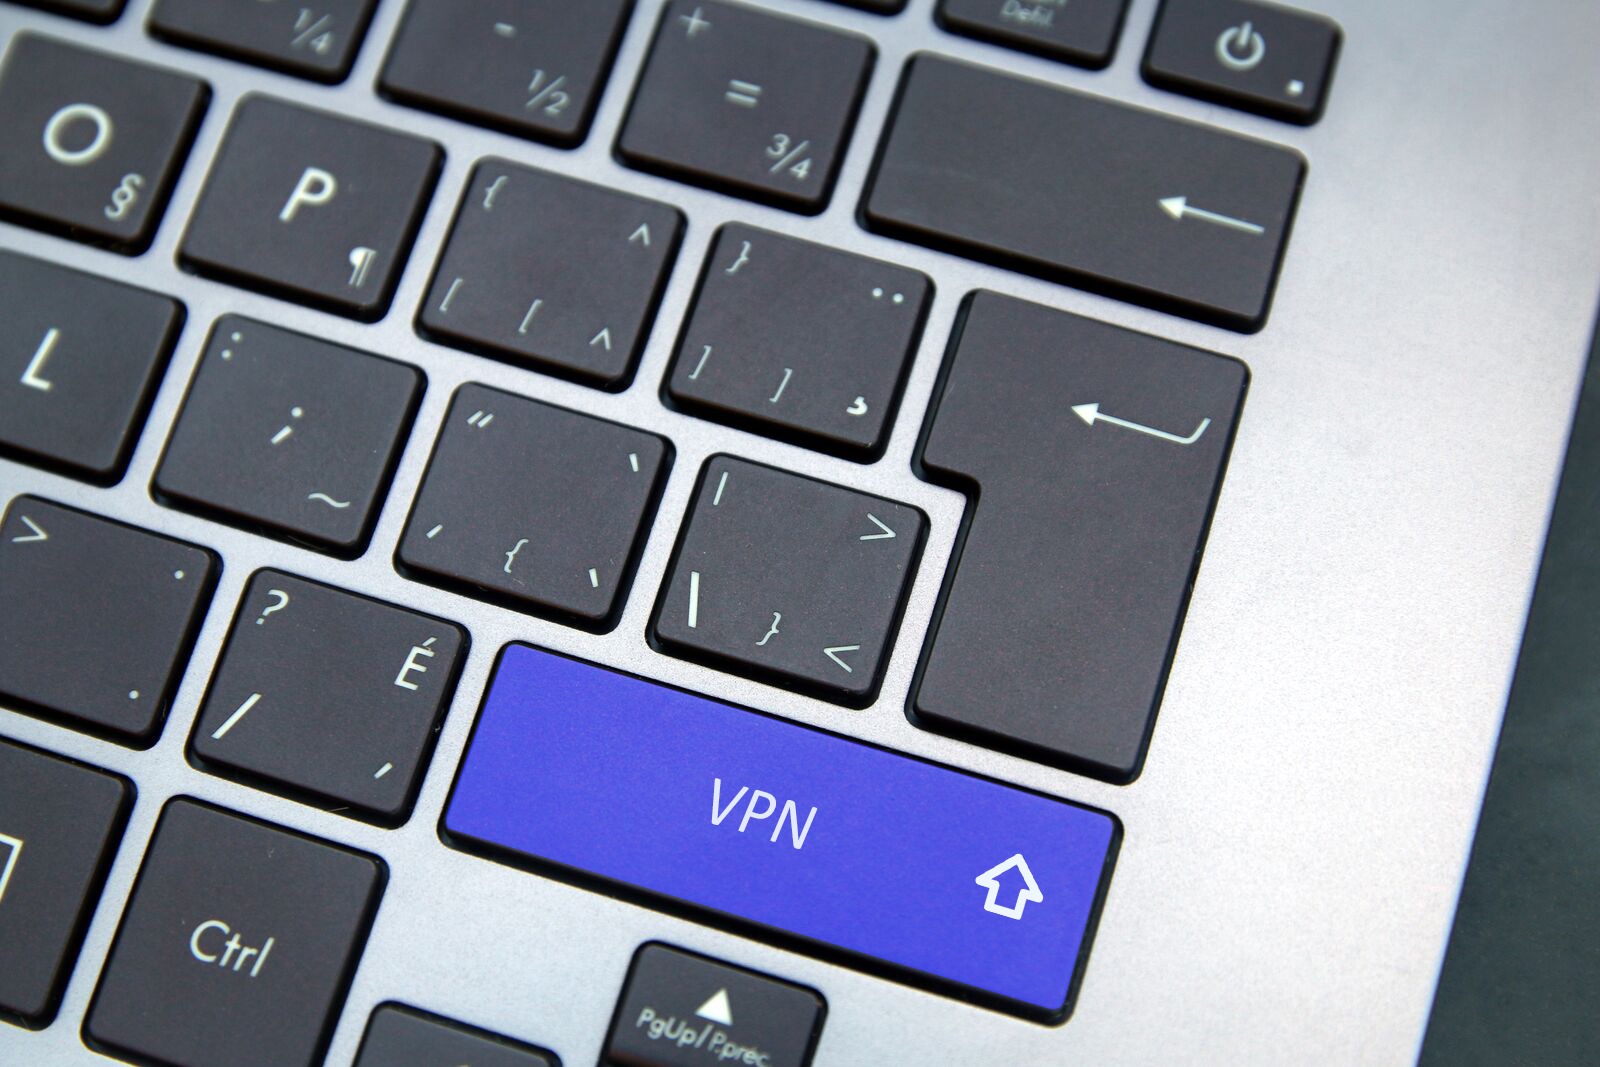 VPN on keyboard